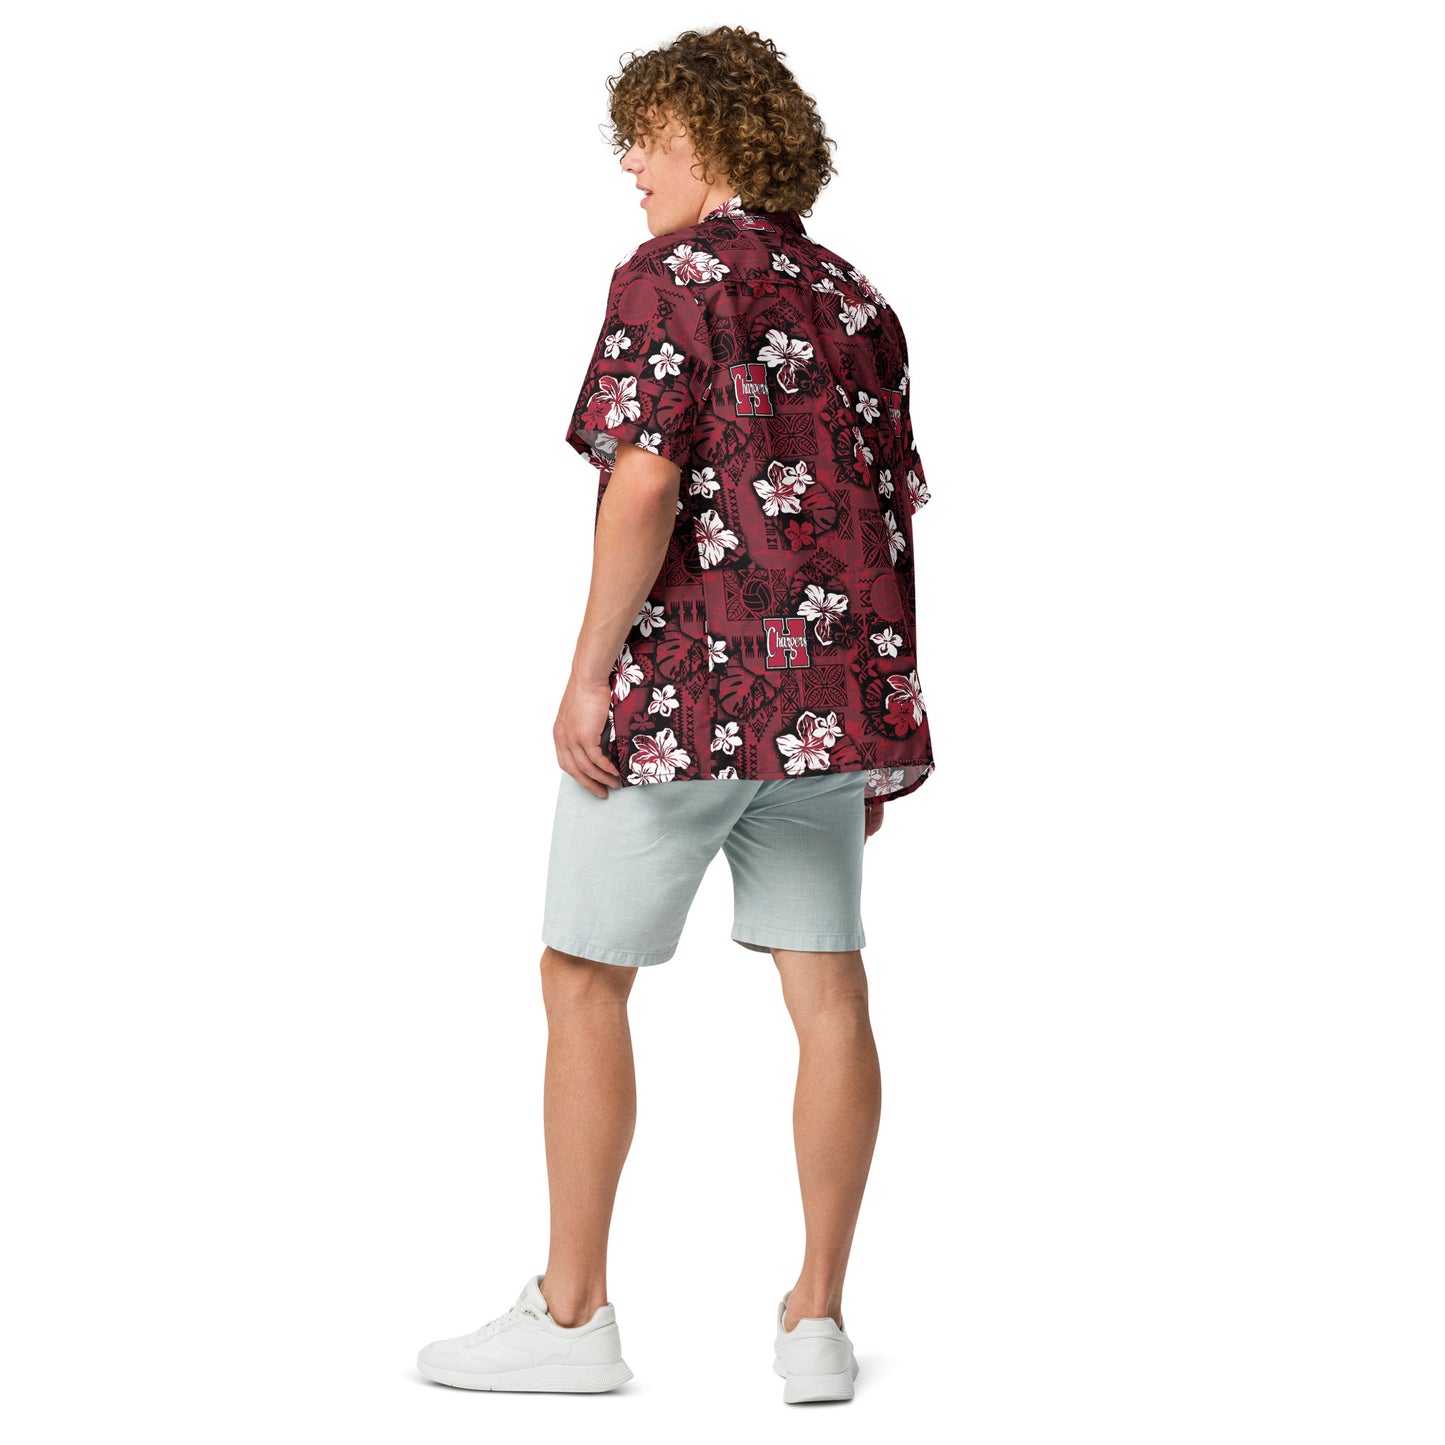 Hamilton Tapa Aloha Shirt